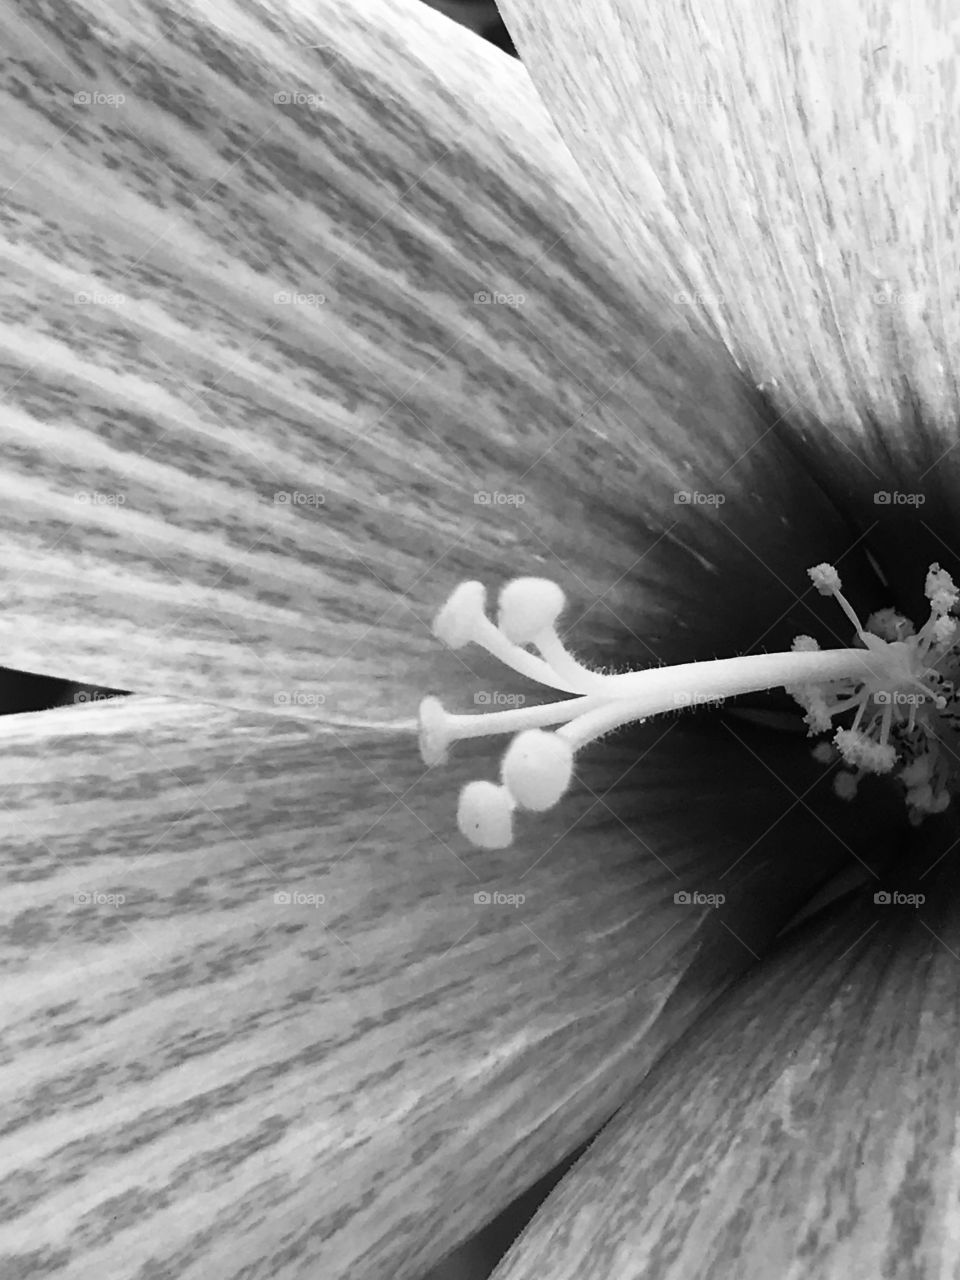 Inside the Flower